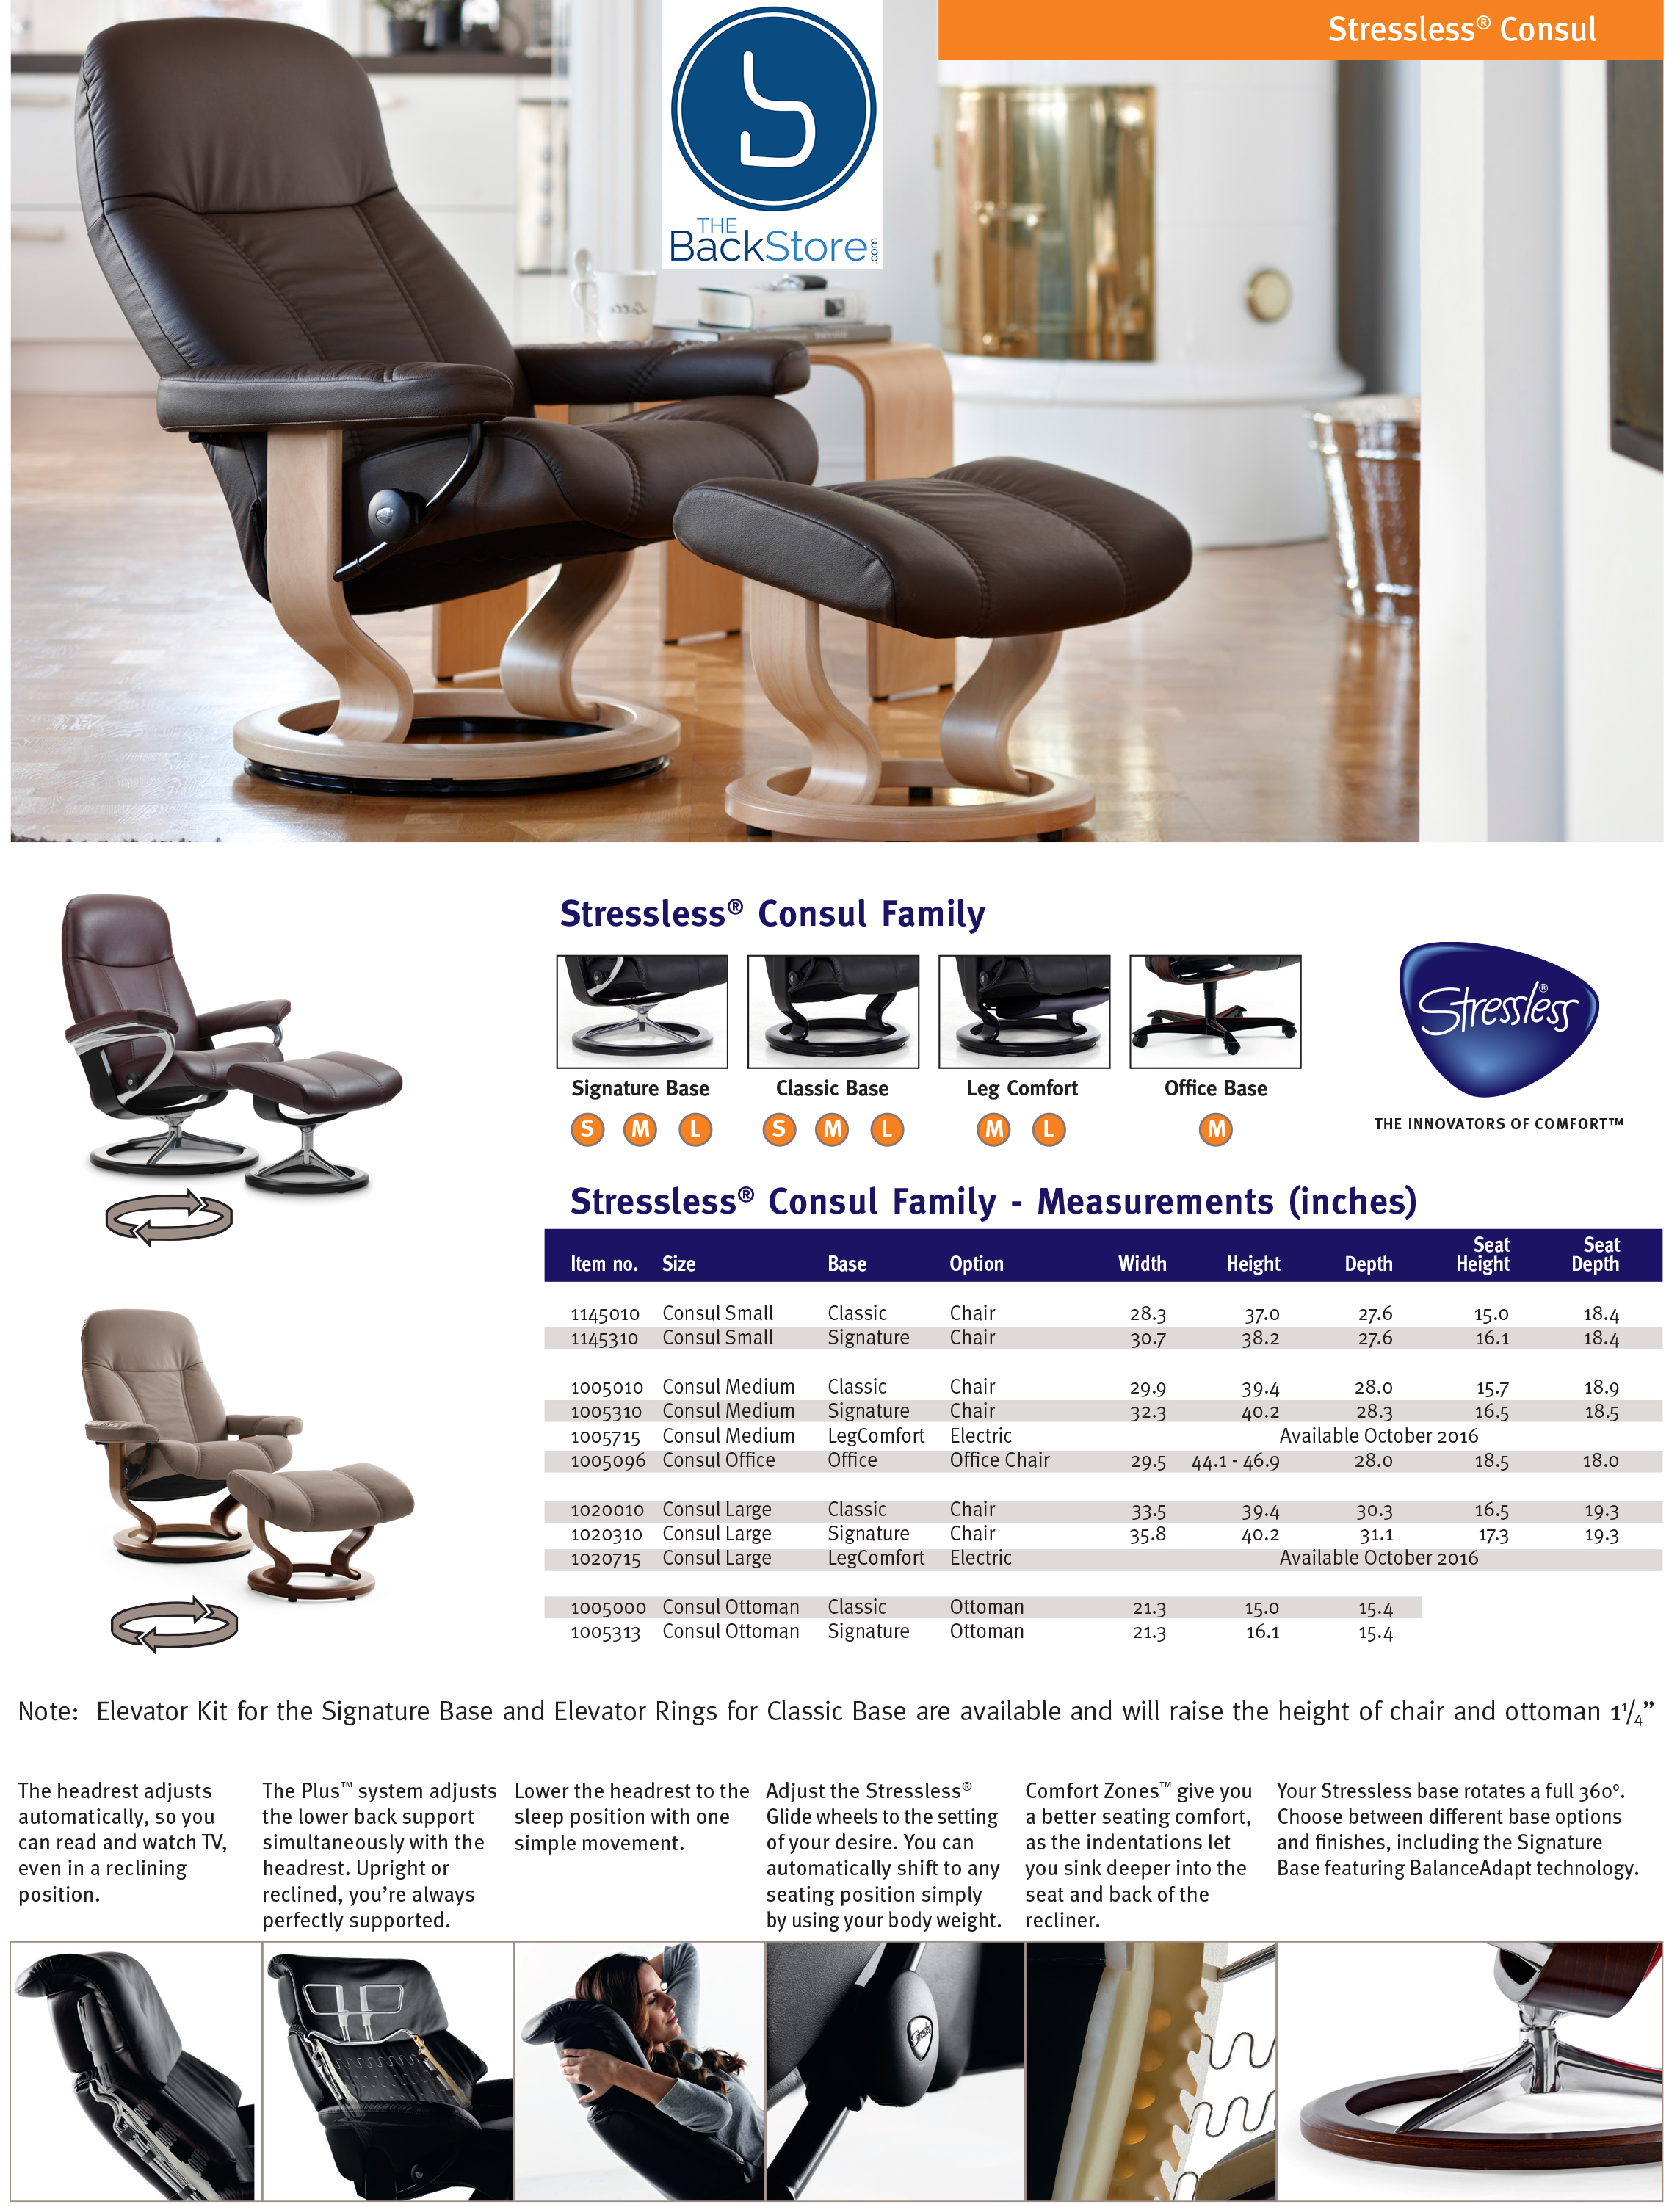 Classic Recliner Base Power Ergonomic Chair Stressless LegComfort Chair. Recliner Consul Lounger Consul